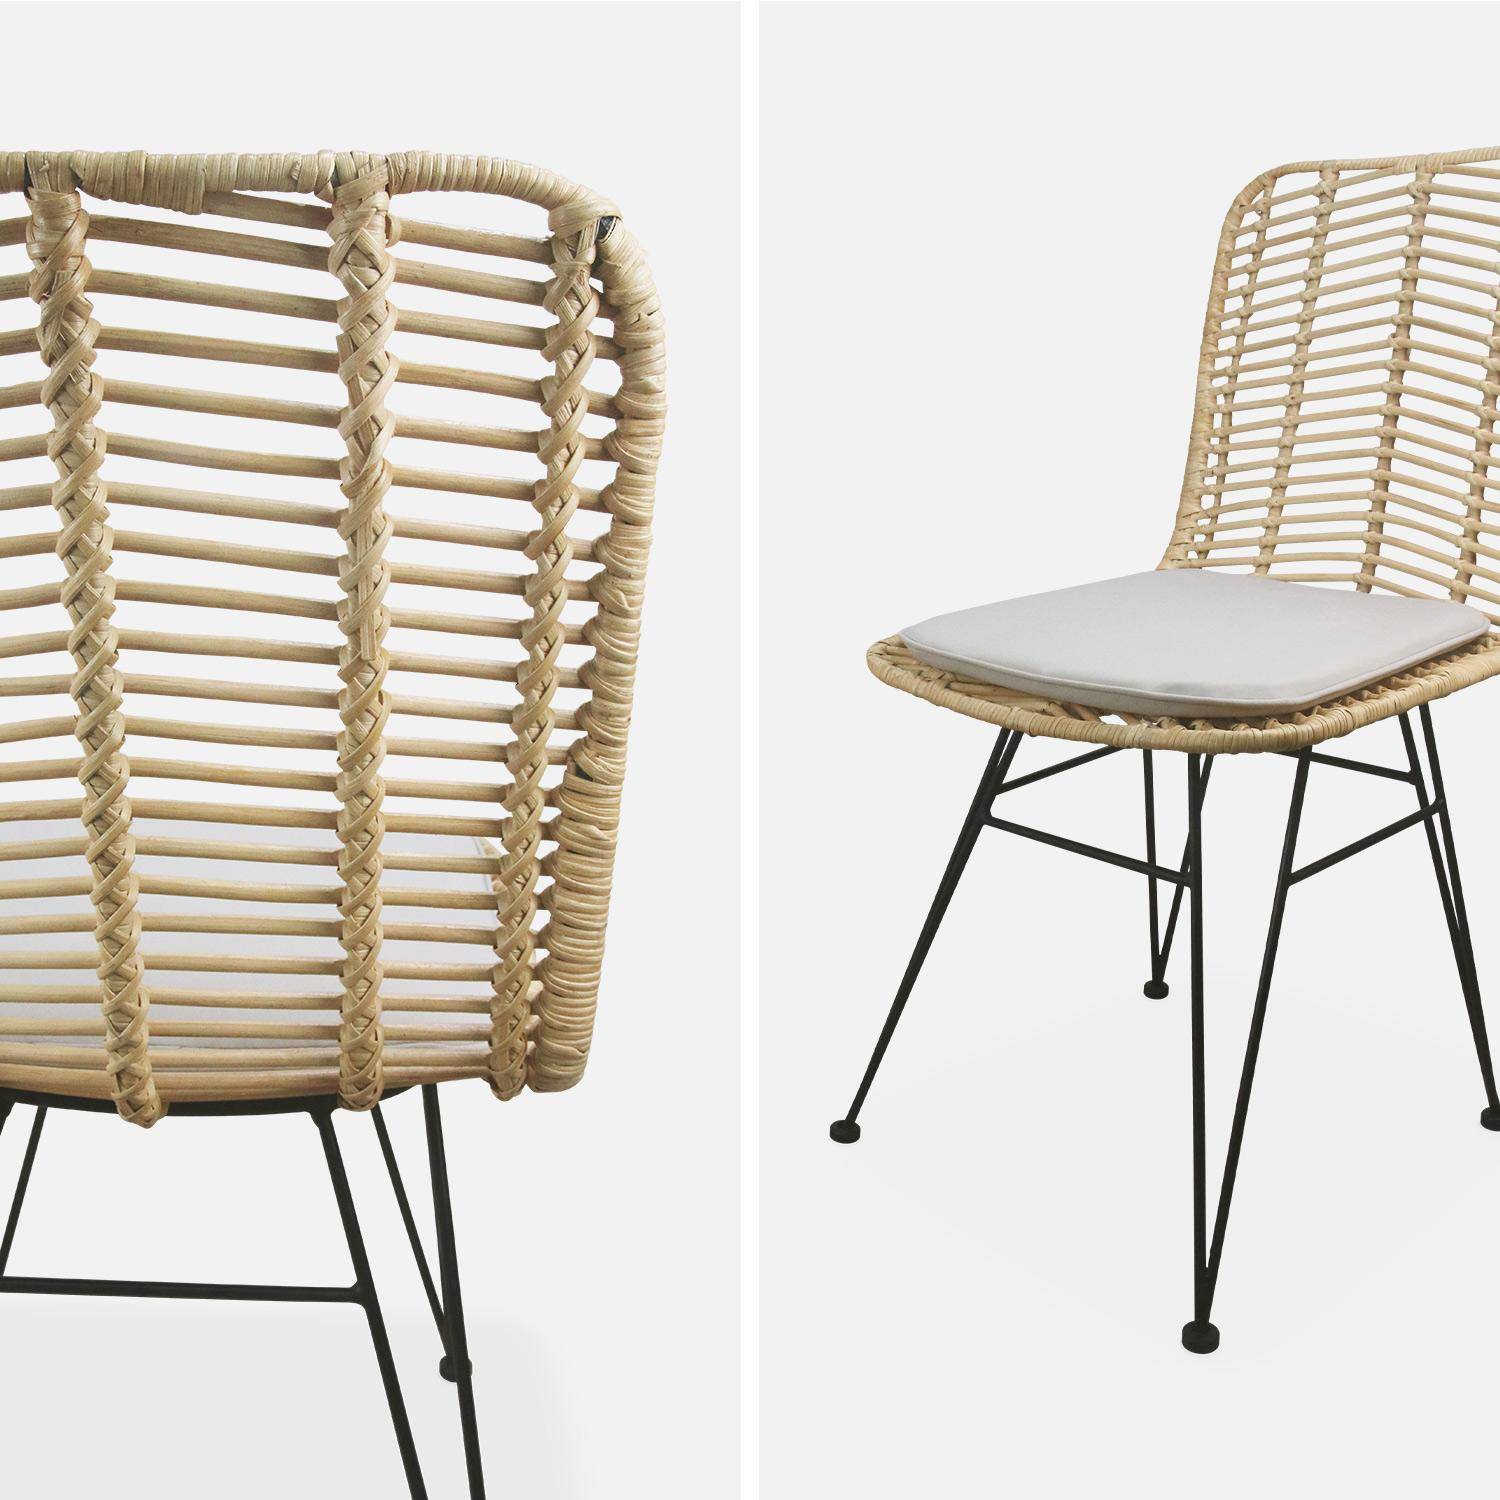 Dos sillas de ratán natural y metal, cojines beige - Cahya,sweeek,Photo7